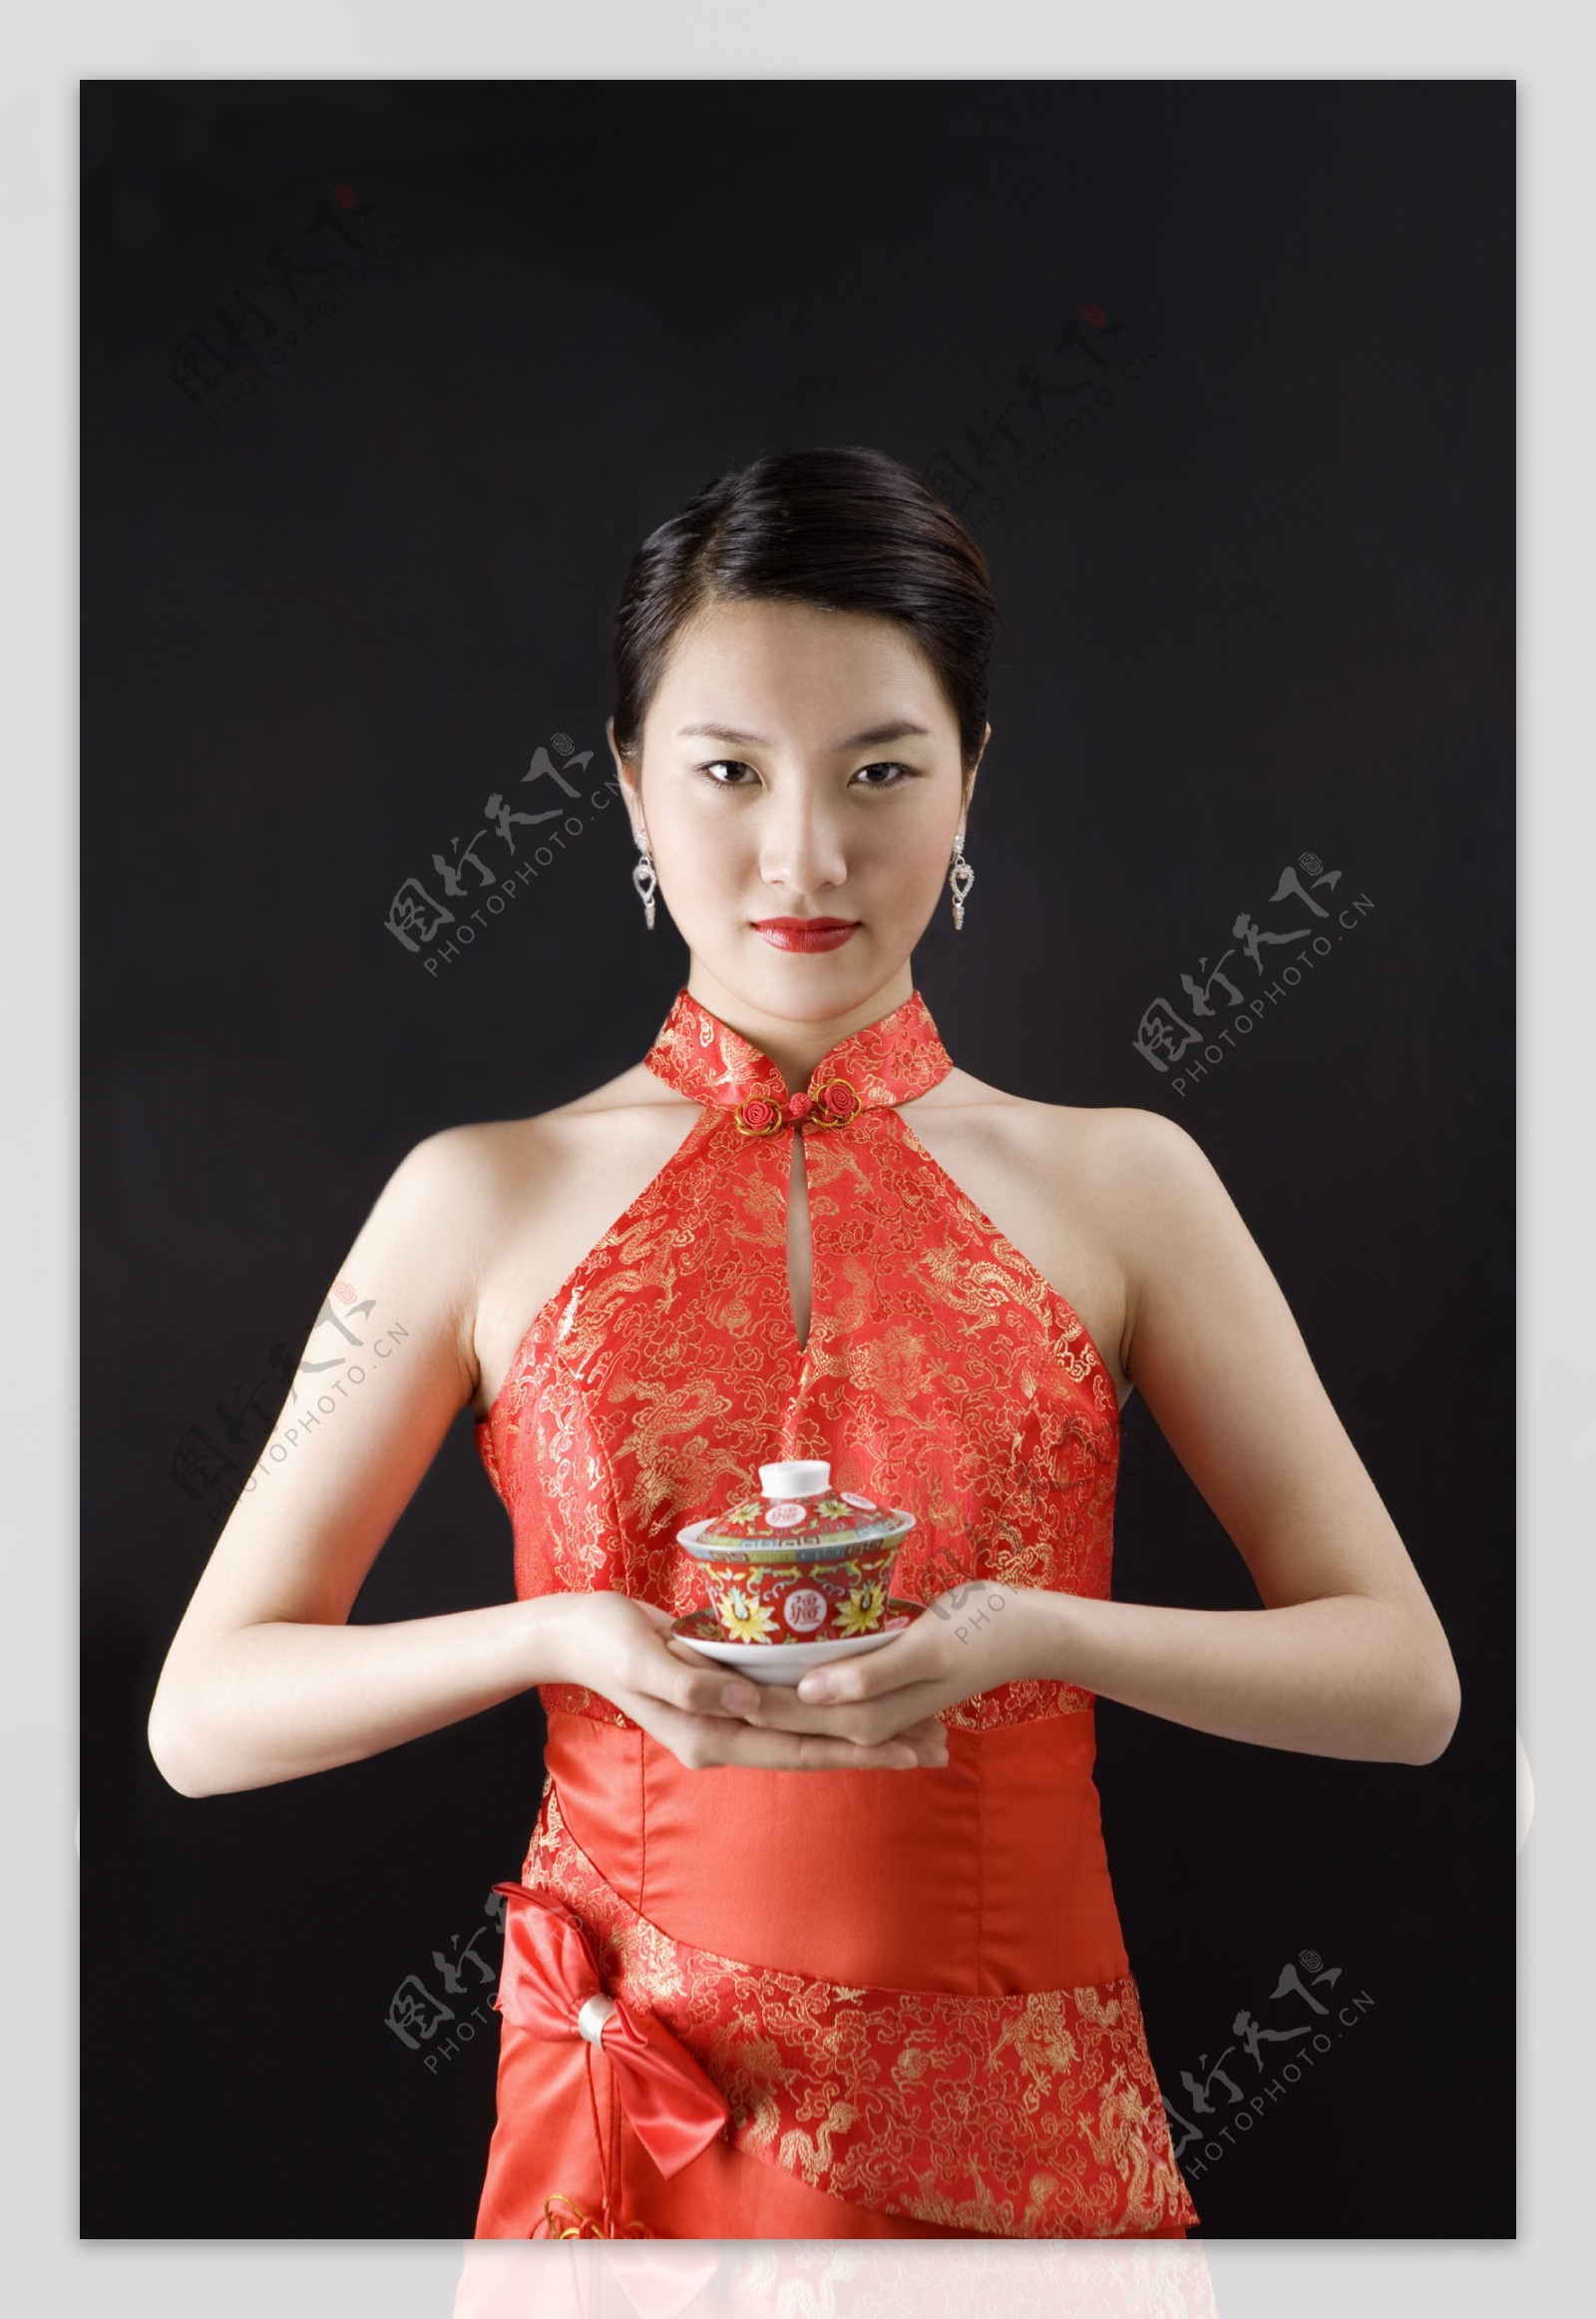 手端茶杯的旗袍女性人物图片